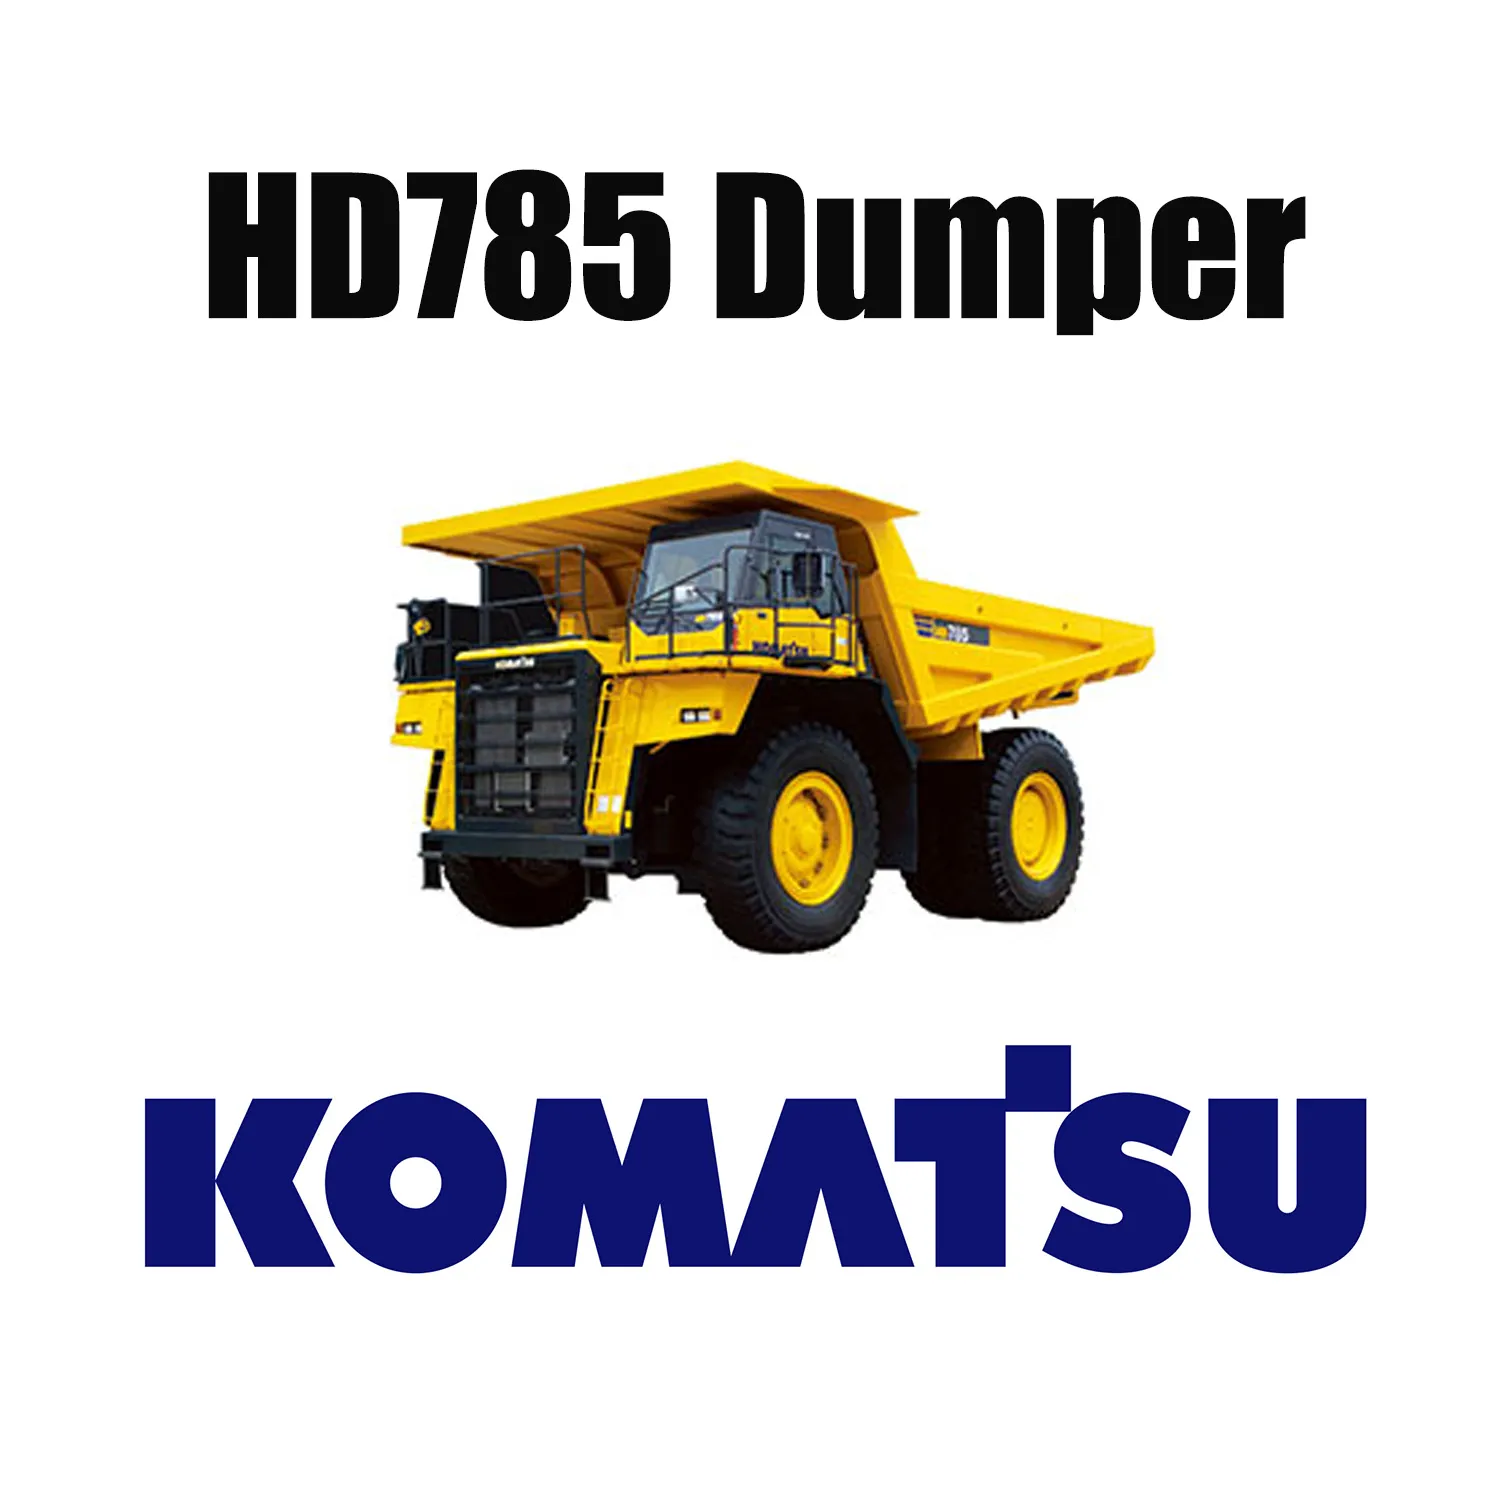 Tough Mining Specialty OTR Tires 27.00R49 for Dump Truck KOMATSU HD785